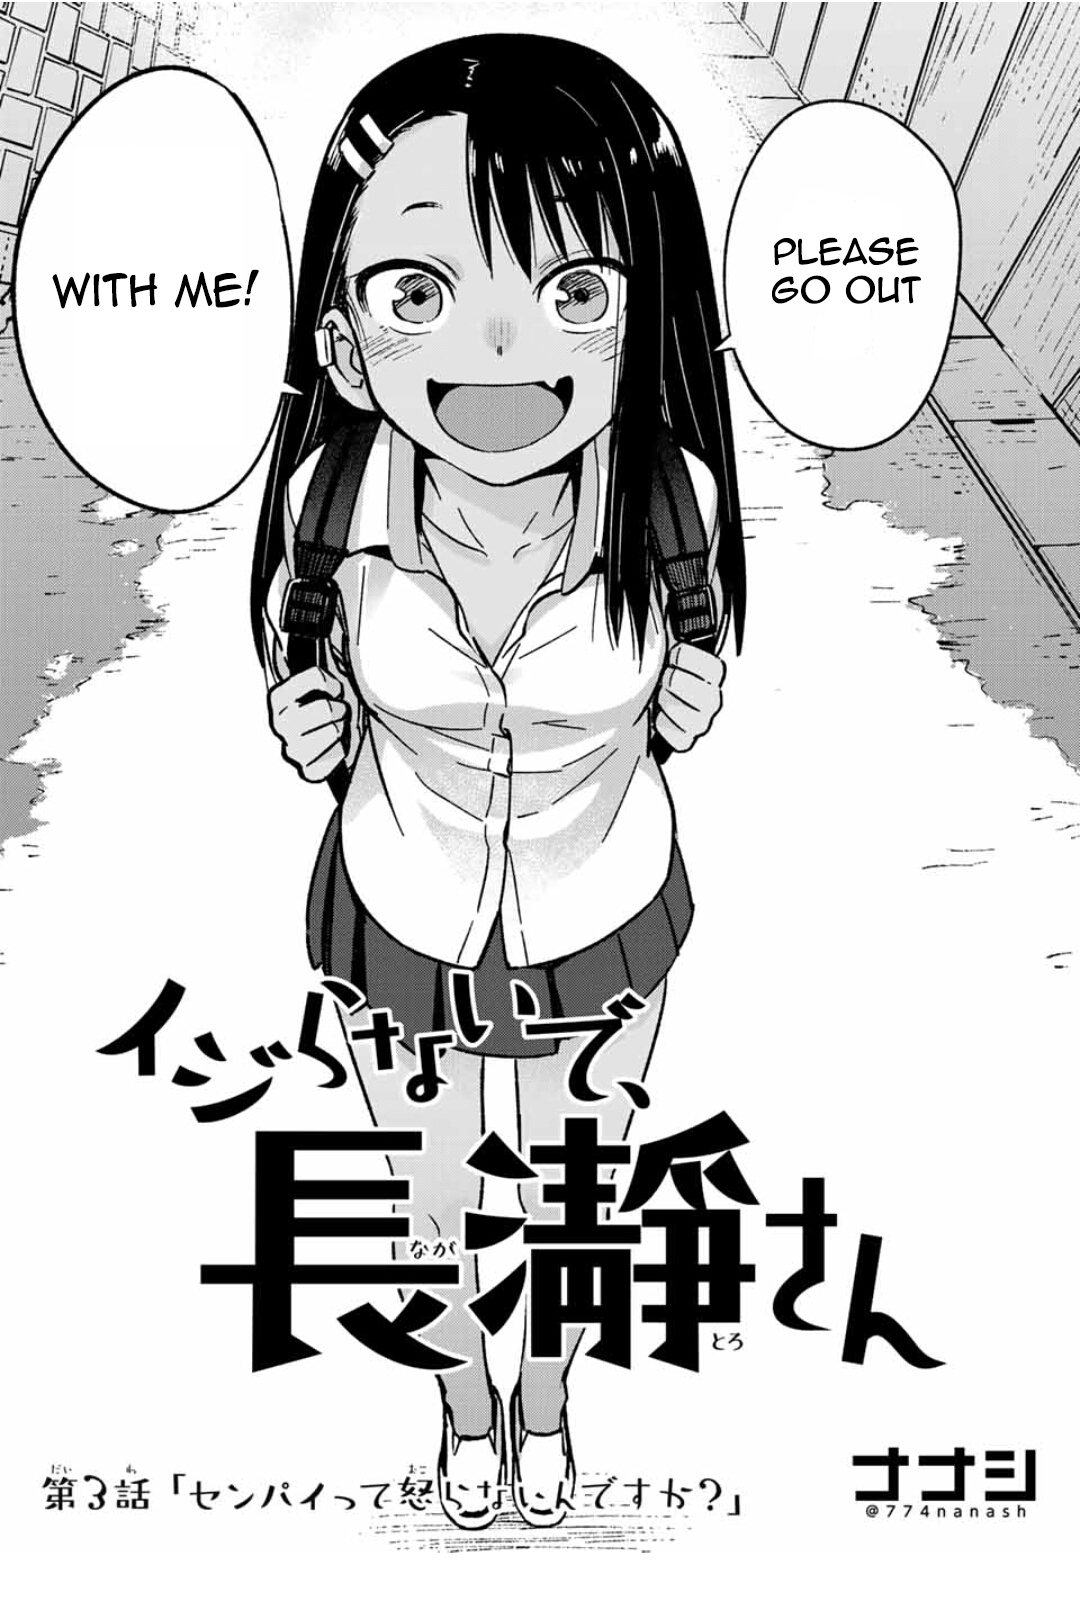 Best Anime Wallpaper Kami: Don T Bully Me Wallpaper